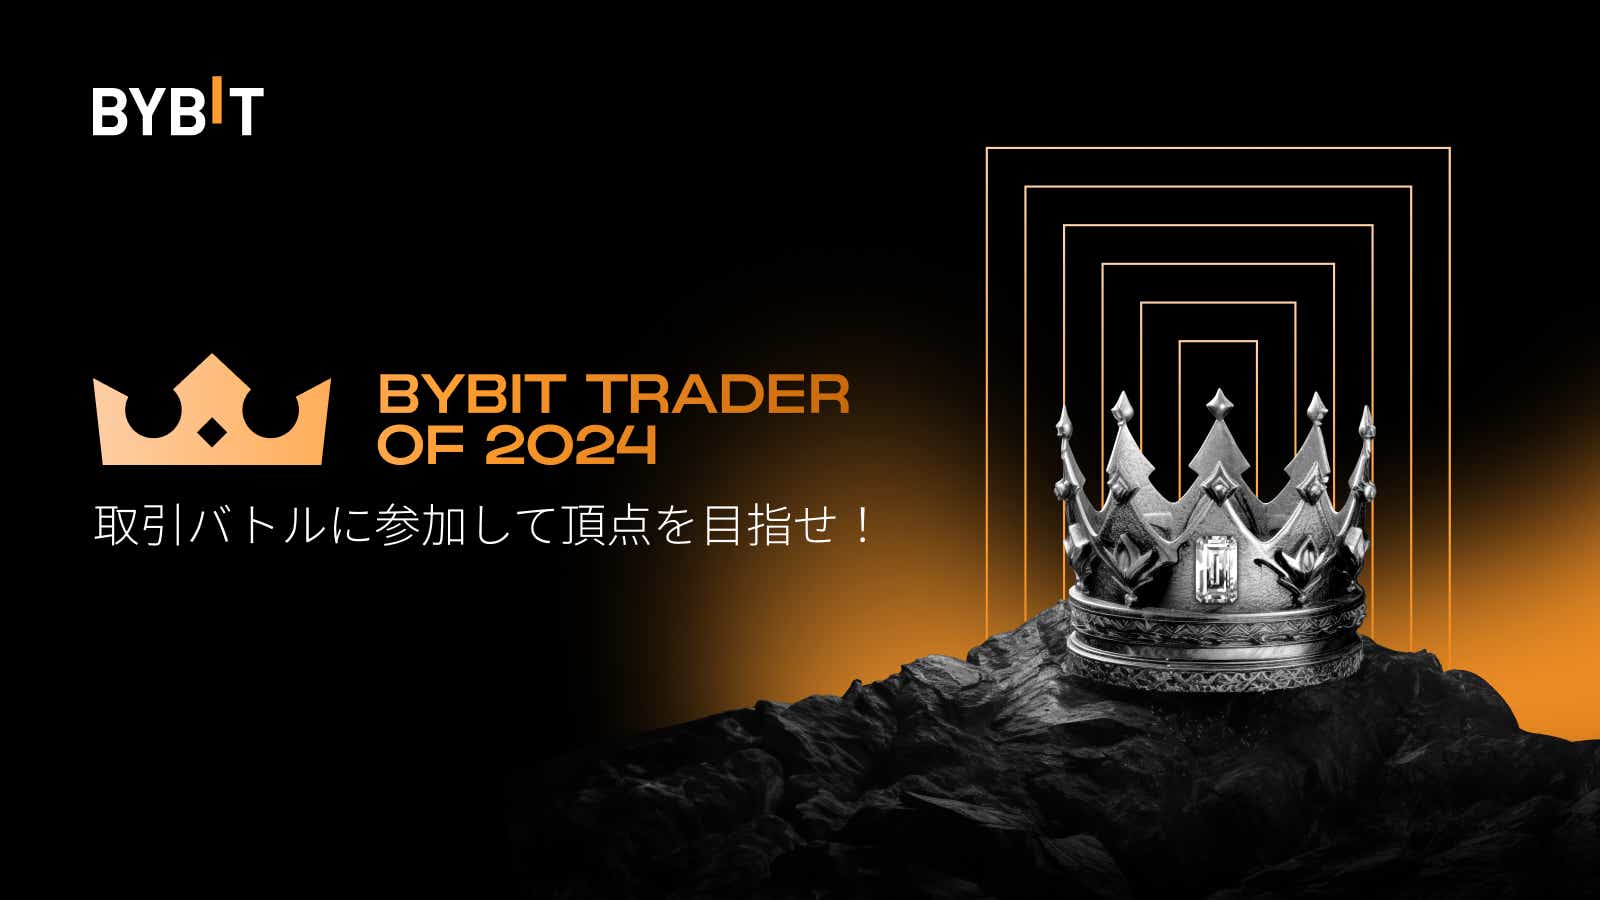 Bybit Announcement | 【Bybit最優秀トレーダー2024】2月の取引大会